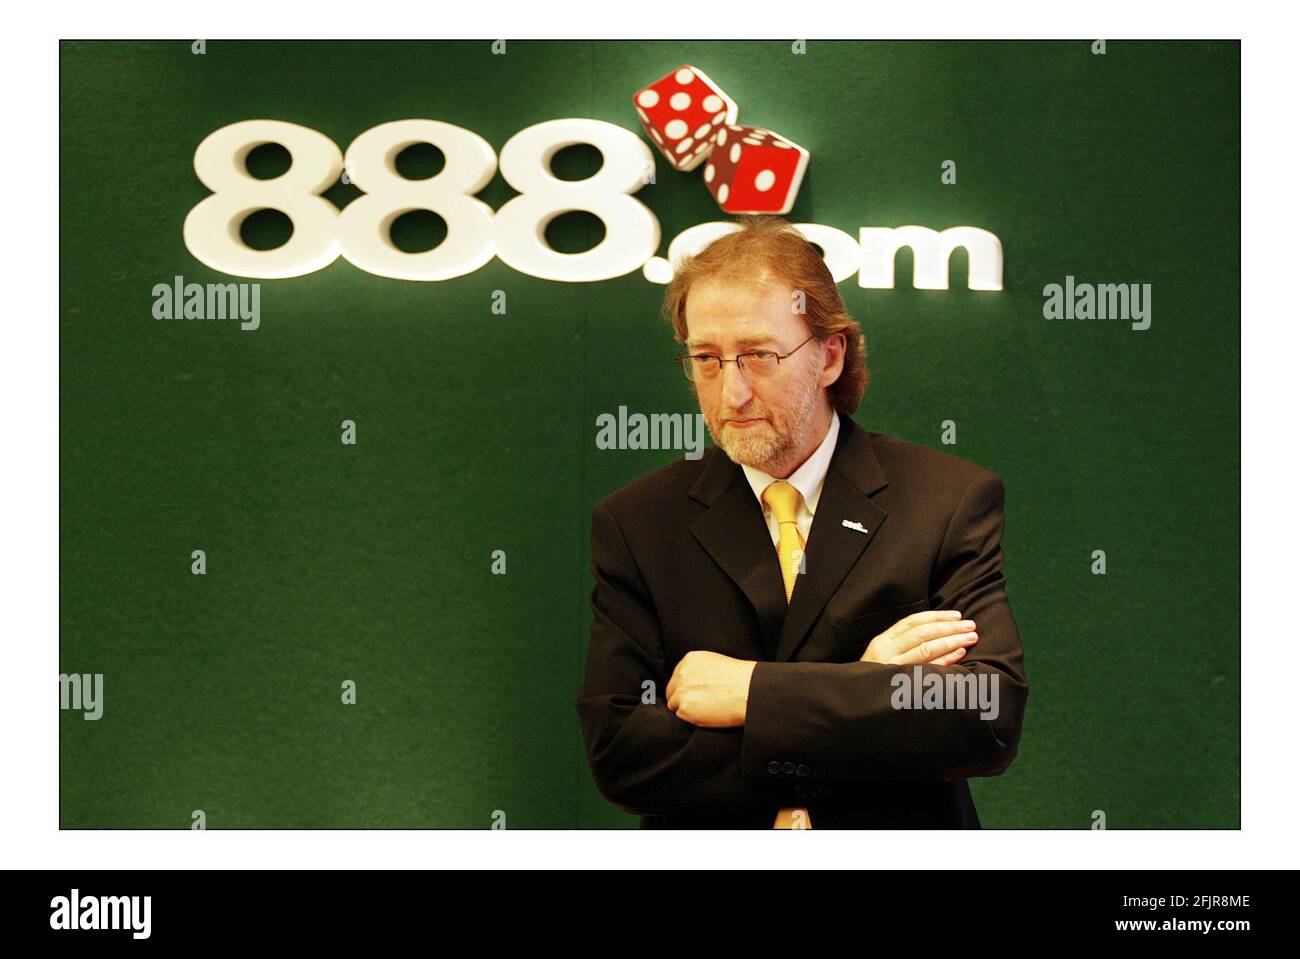 John Anderson, Directeur général de 888.com pic David Sandison 1/9/2005 Banque D'Images